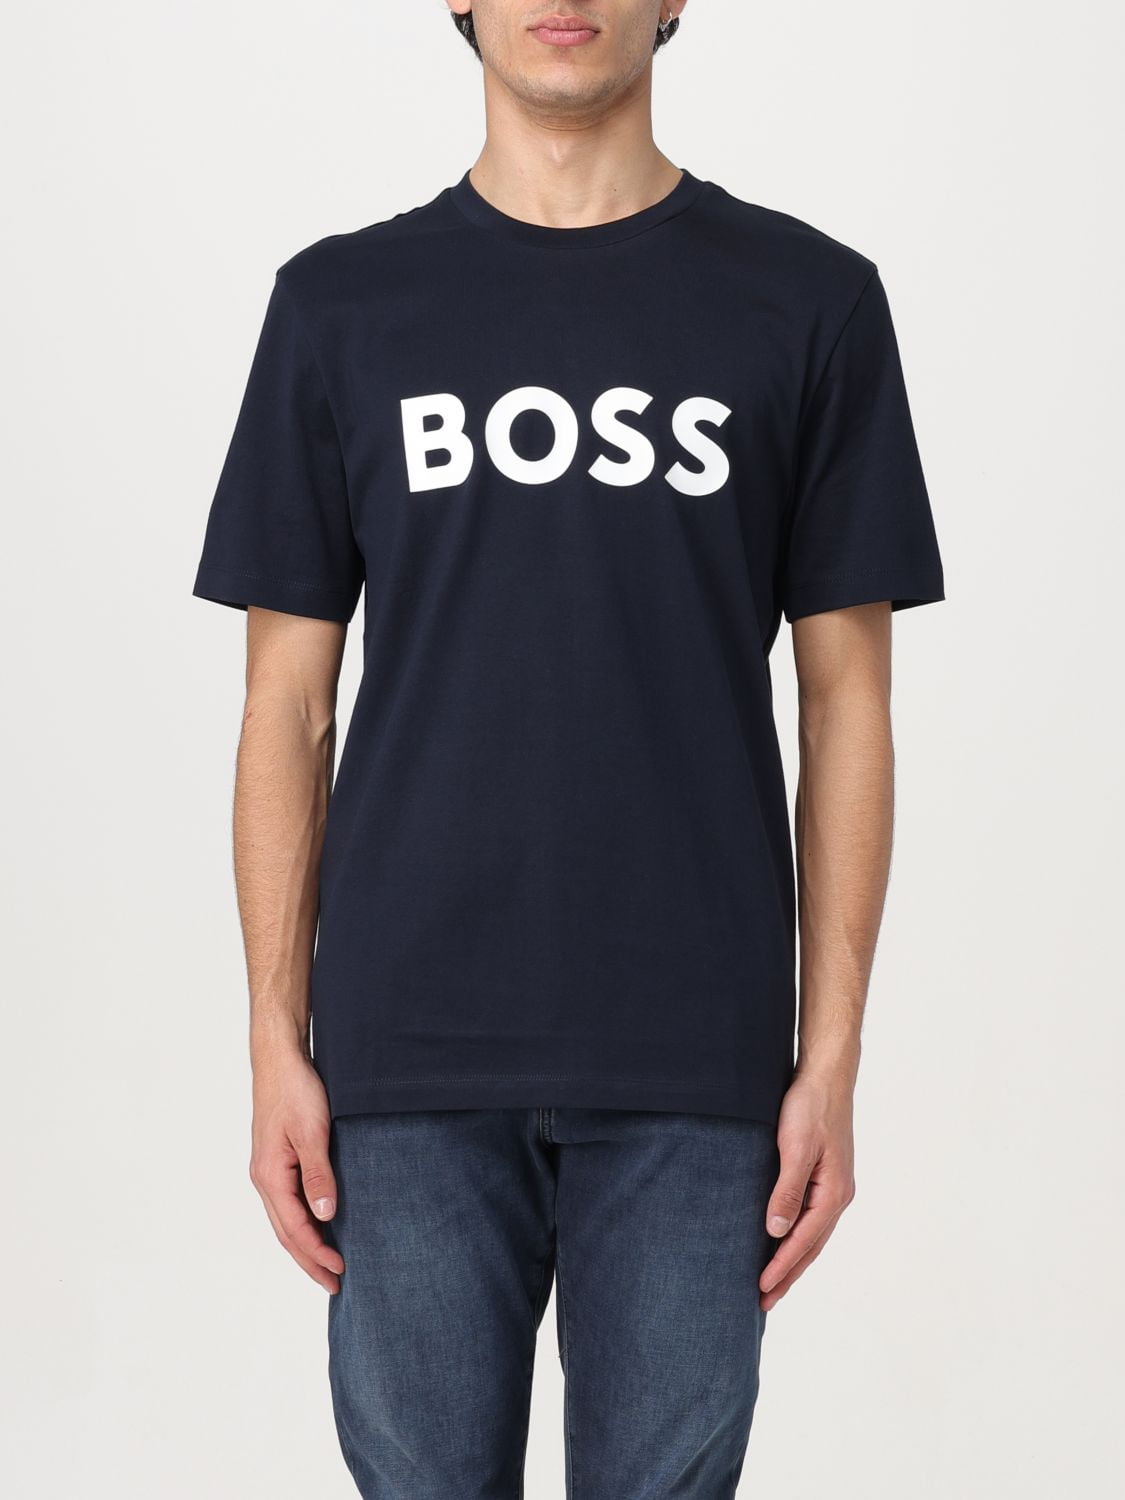 Boss T-Shirt Men Blue Men - Walmart.com